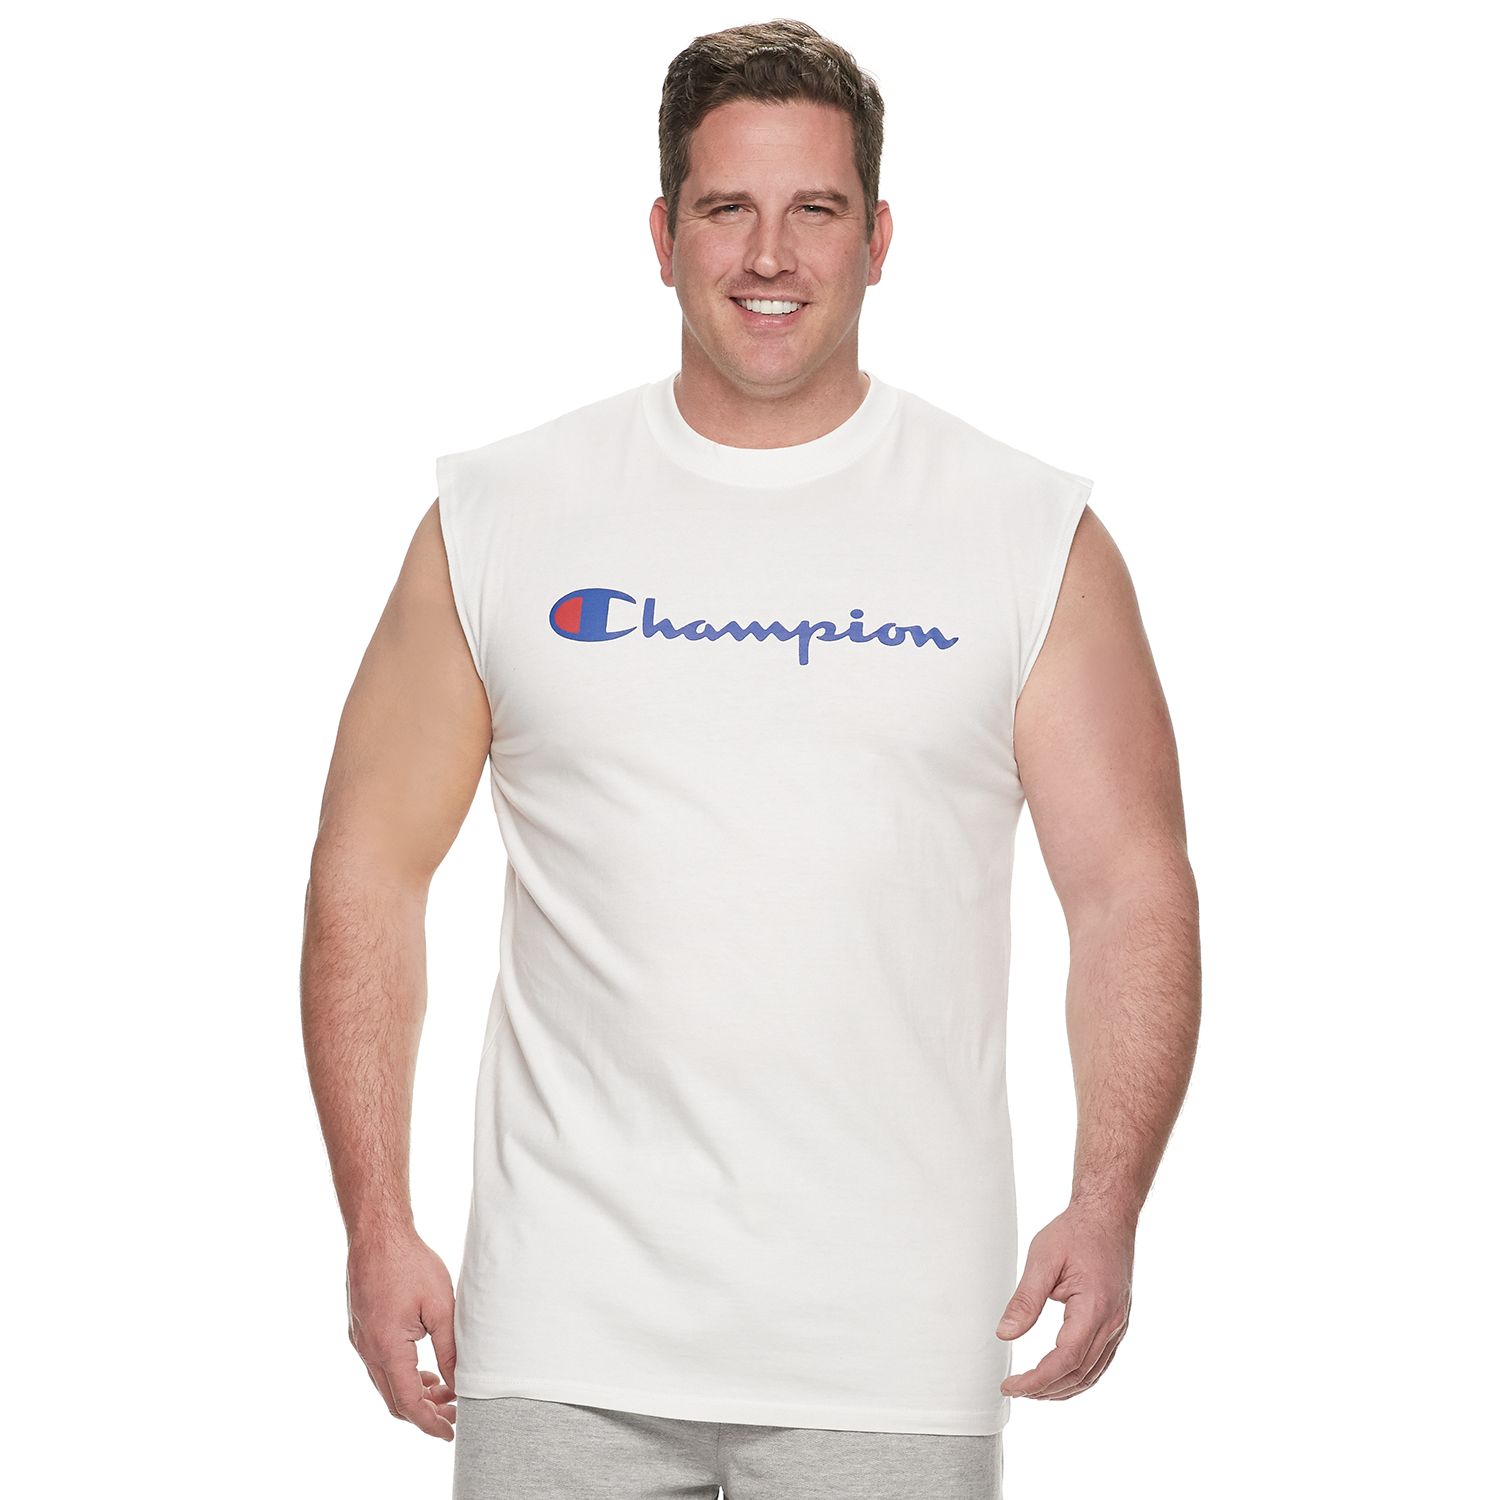 champion muscle shirts